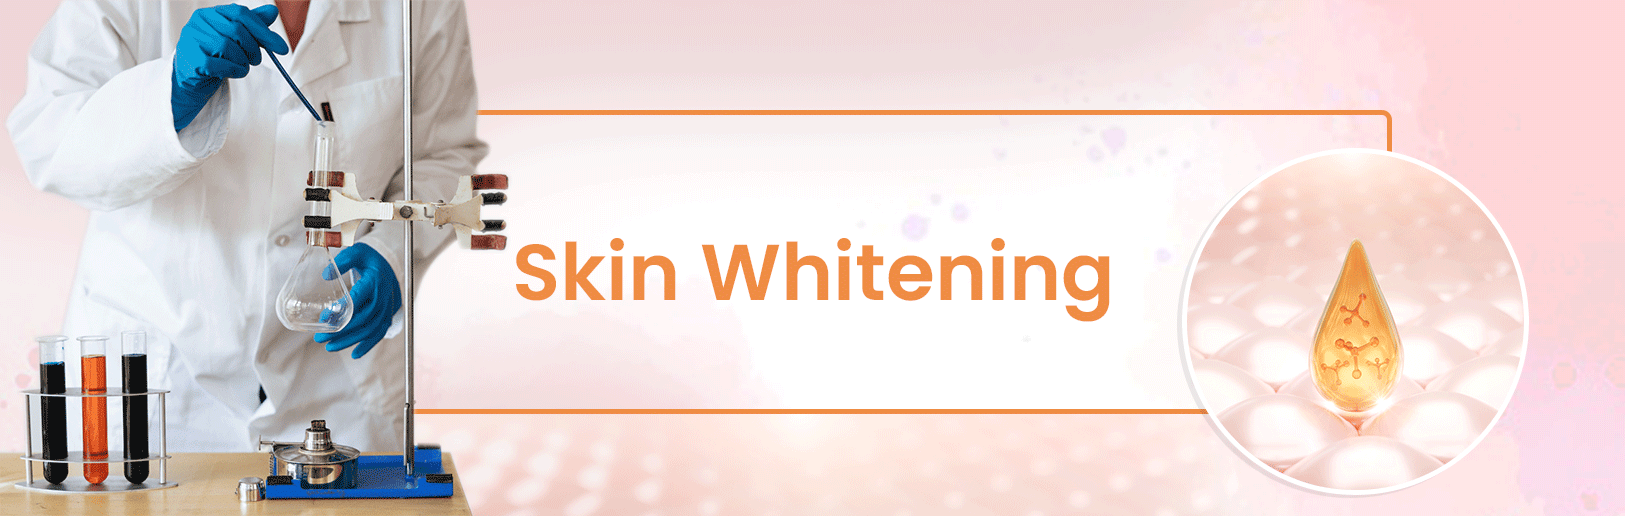 สาร Whitening สำหรับเครื่องสำอางค์ ปรับผิวให้กระจ่าง ใส มีความปลอดภัยสูง - MySkinRecipes.com